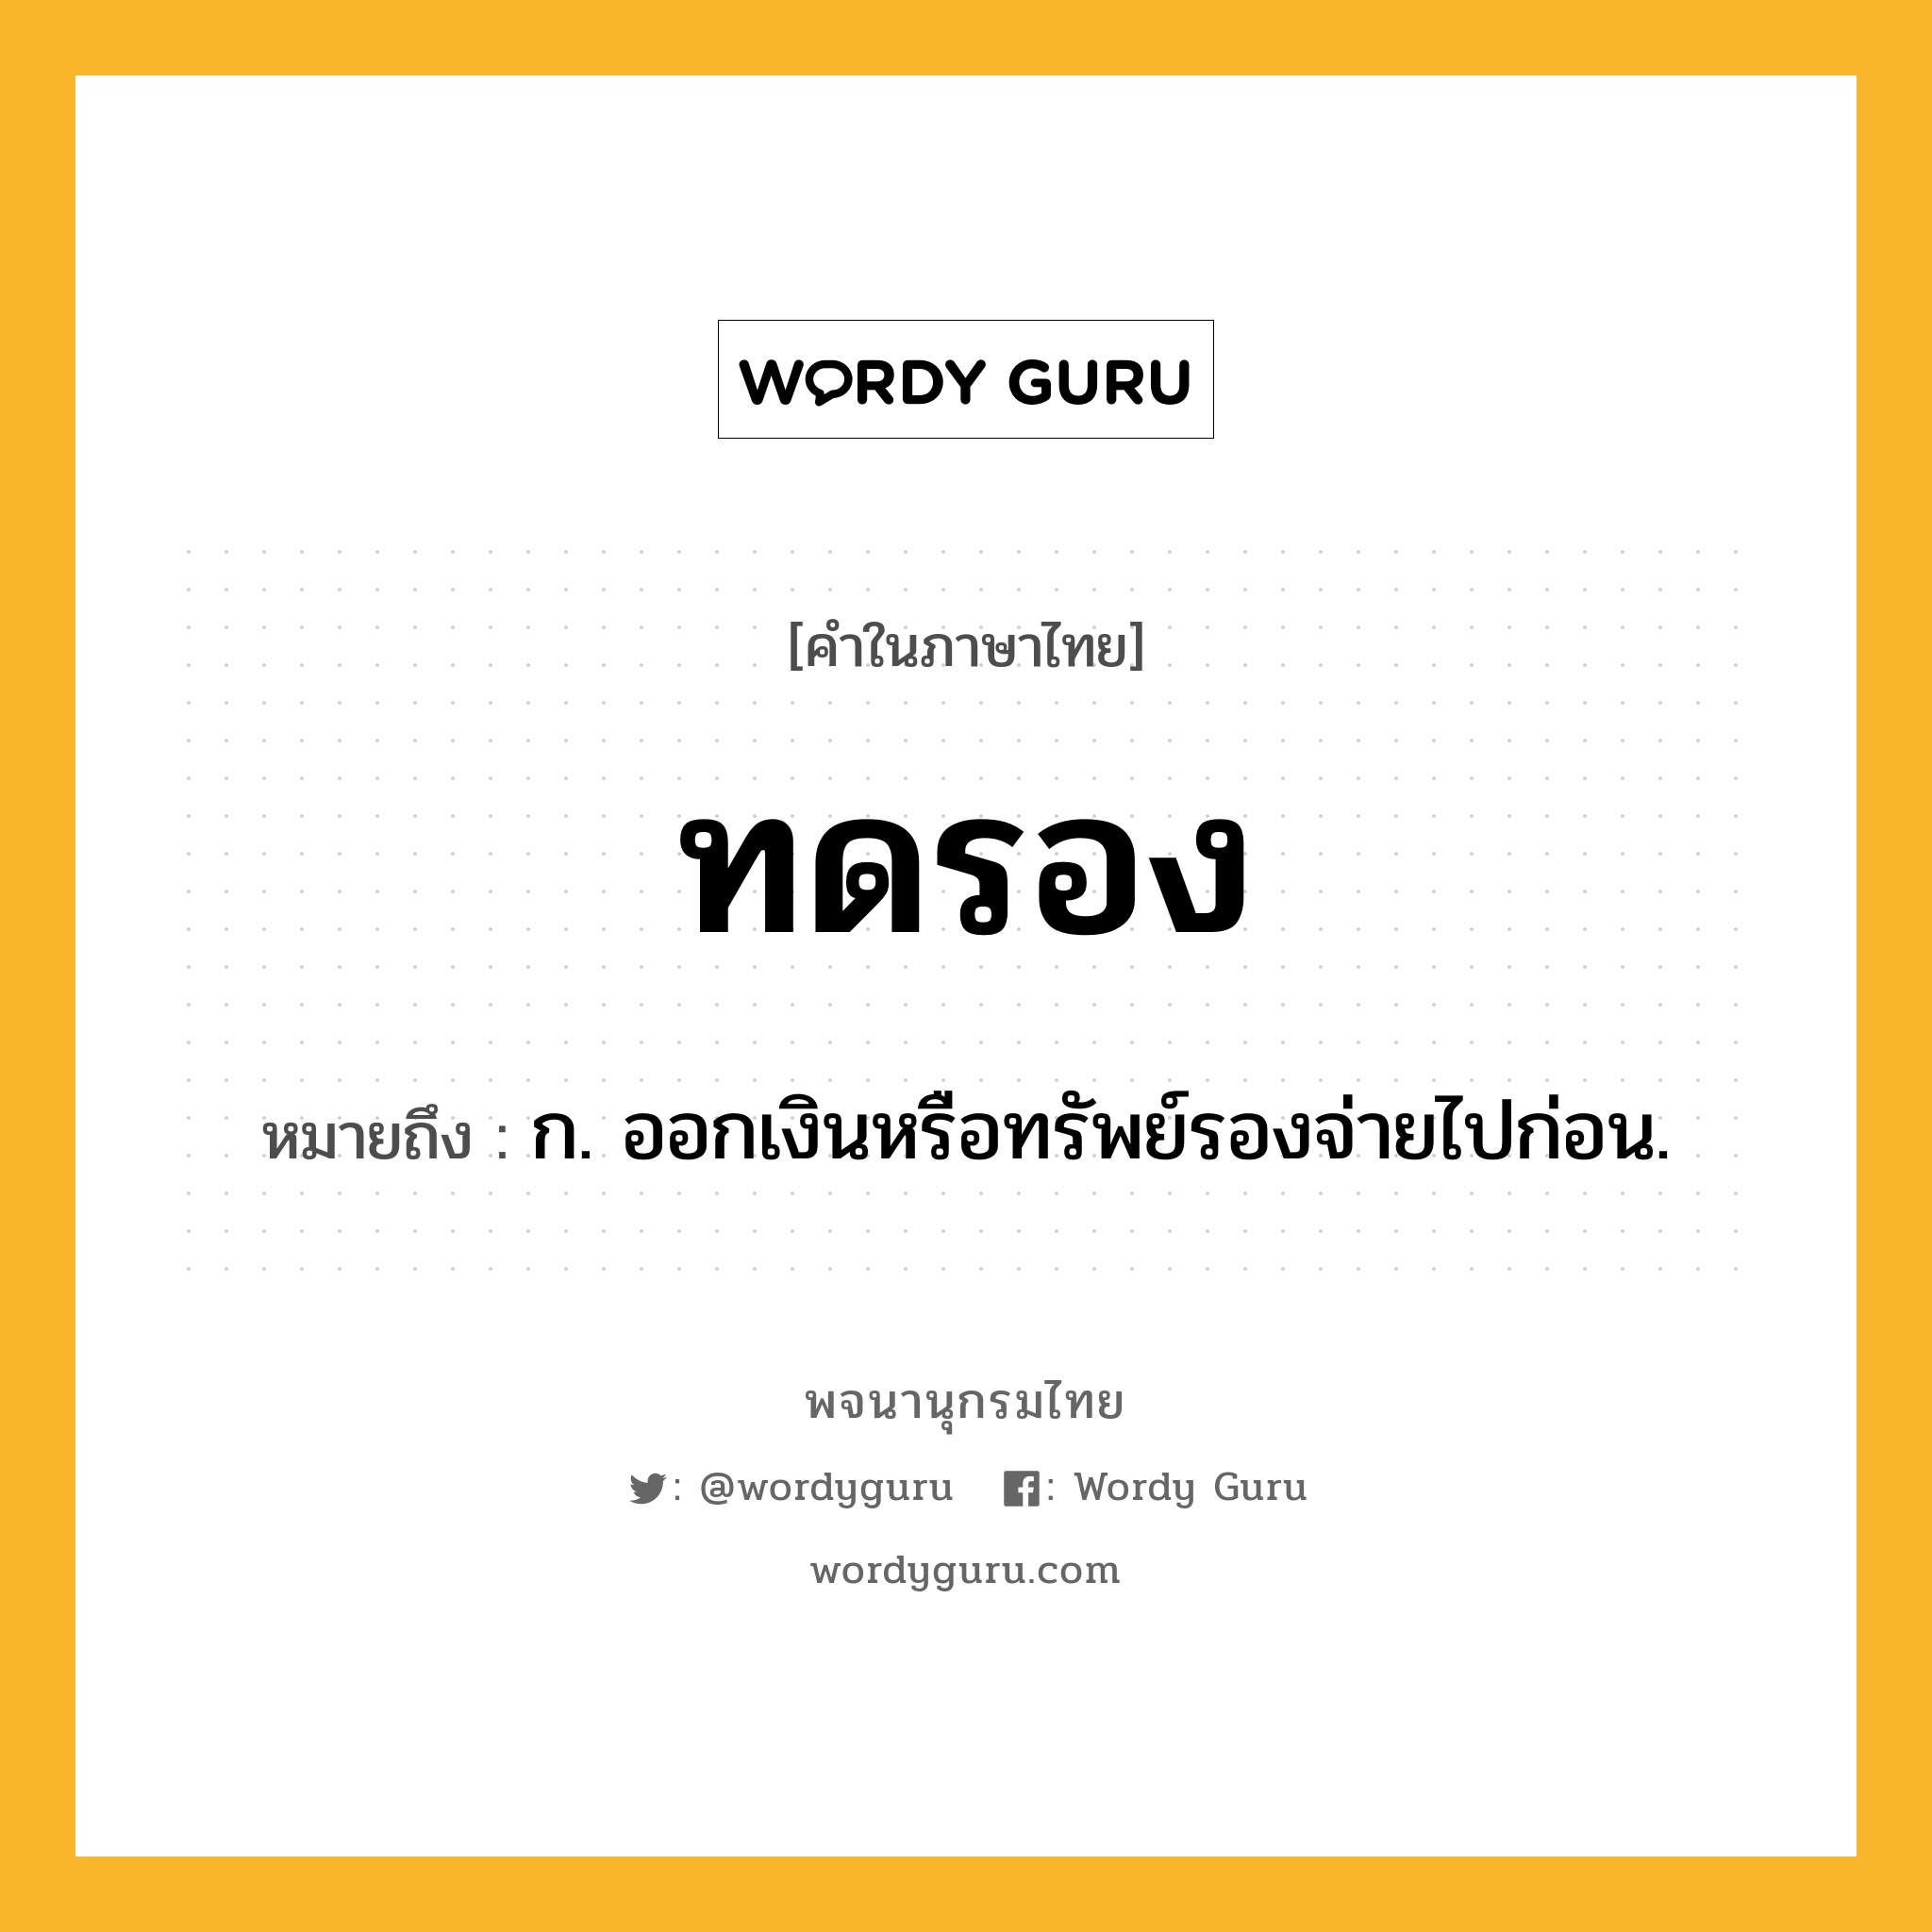 ทดรอง ความหมาย หมายถึงอะไร?, คำในภาษาไทย ทดรอง หมายถึง ก. ออกเงินหรือทรัพย์รองจ่ายไปก่อน.